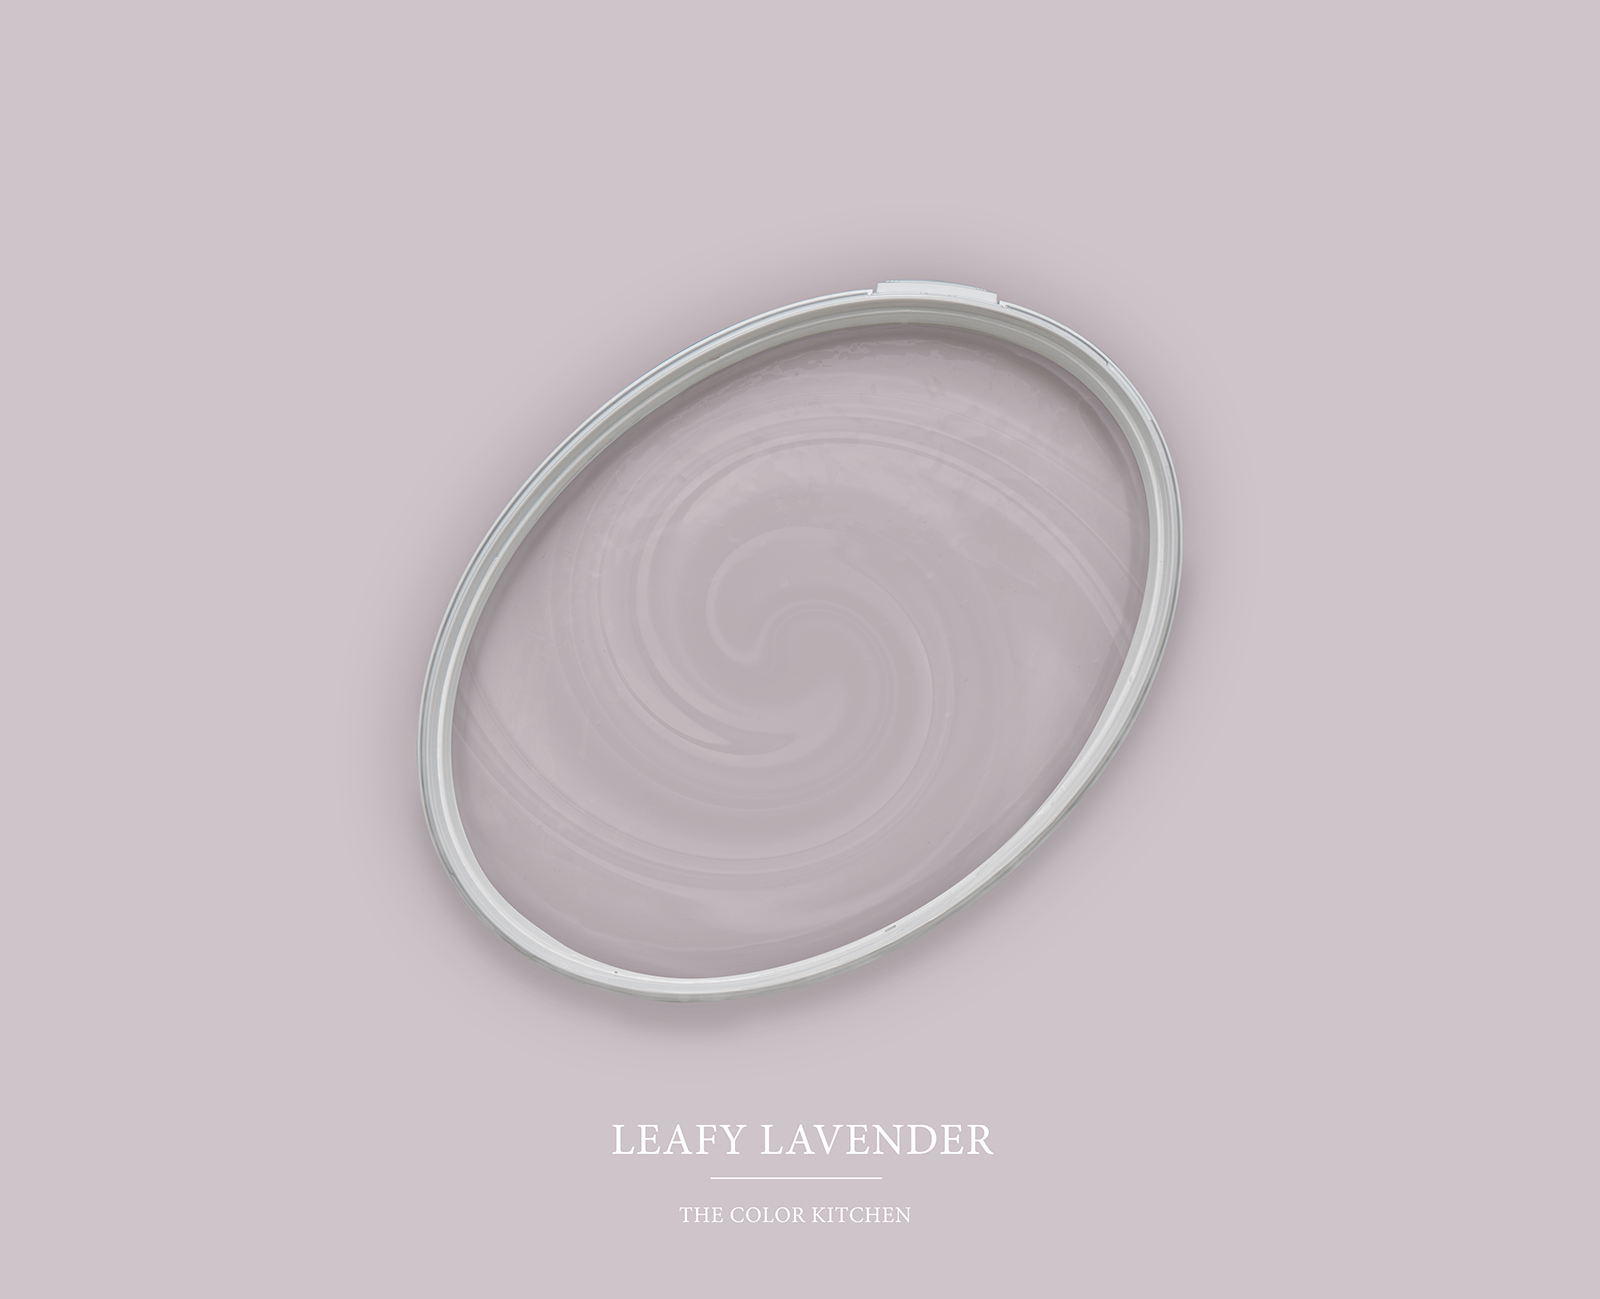 Wandfarbe in kühlem Lavendelton »Leafy Lavender« TCK2004 – 5 Liter
